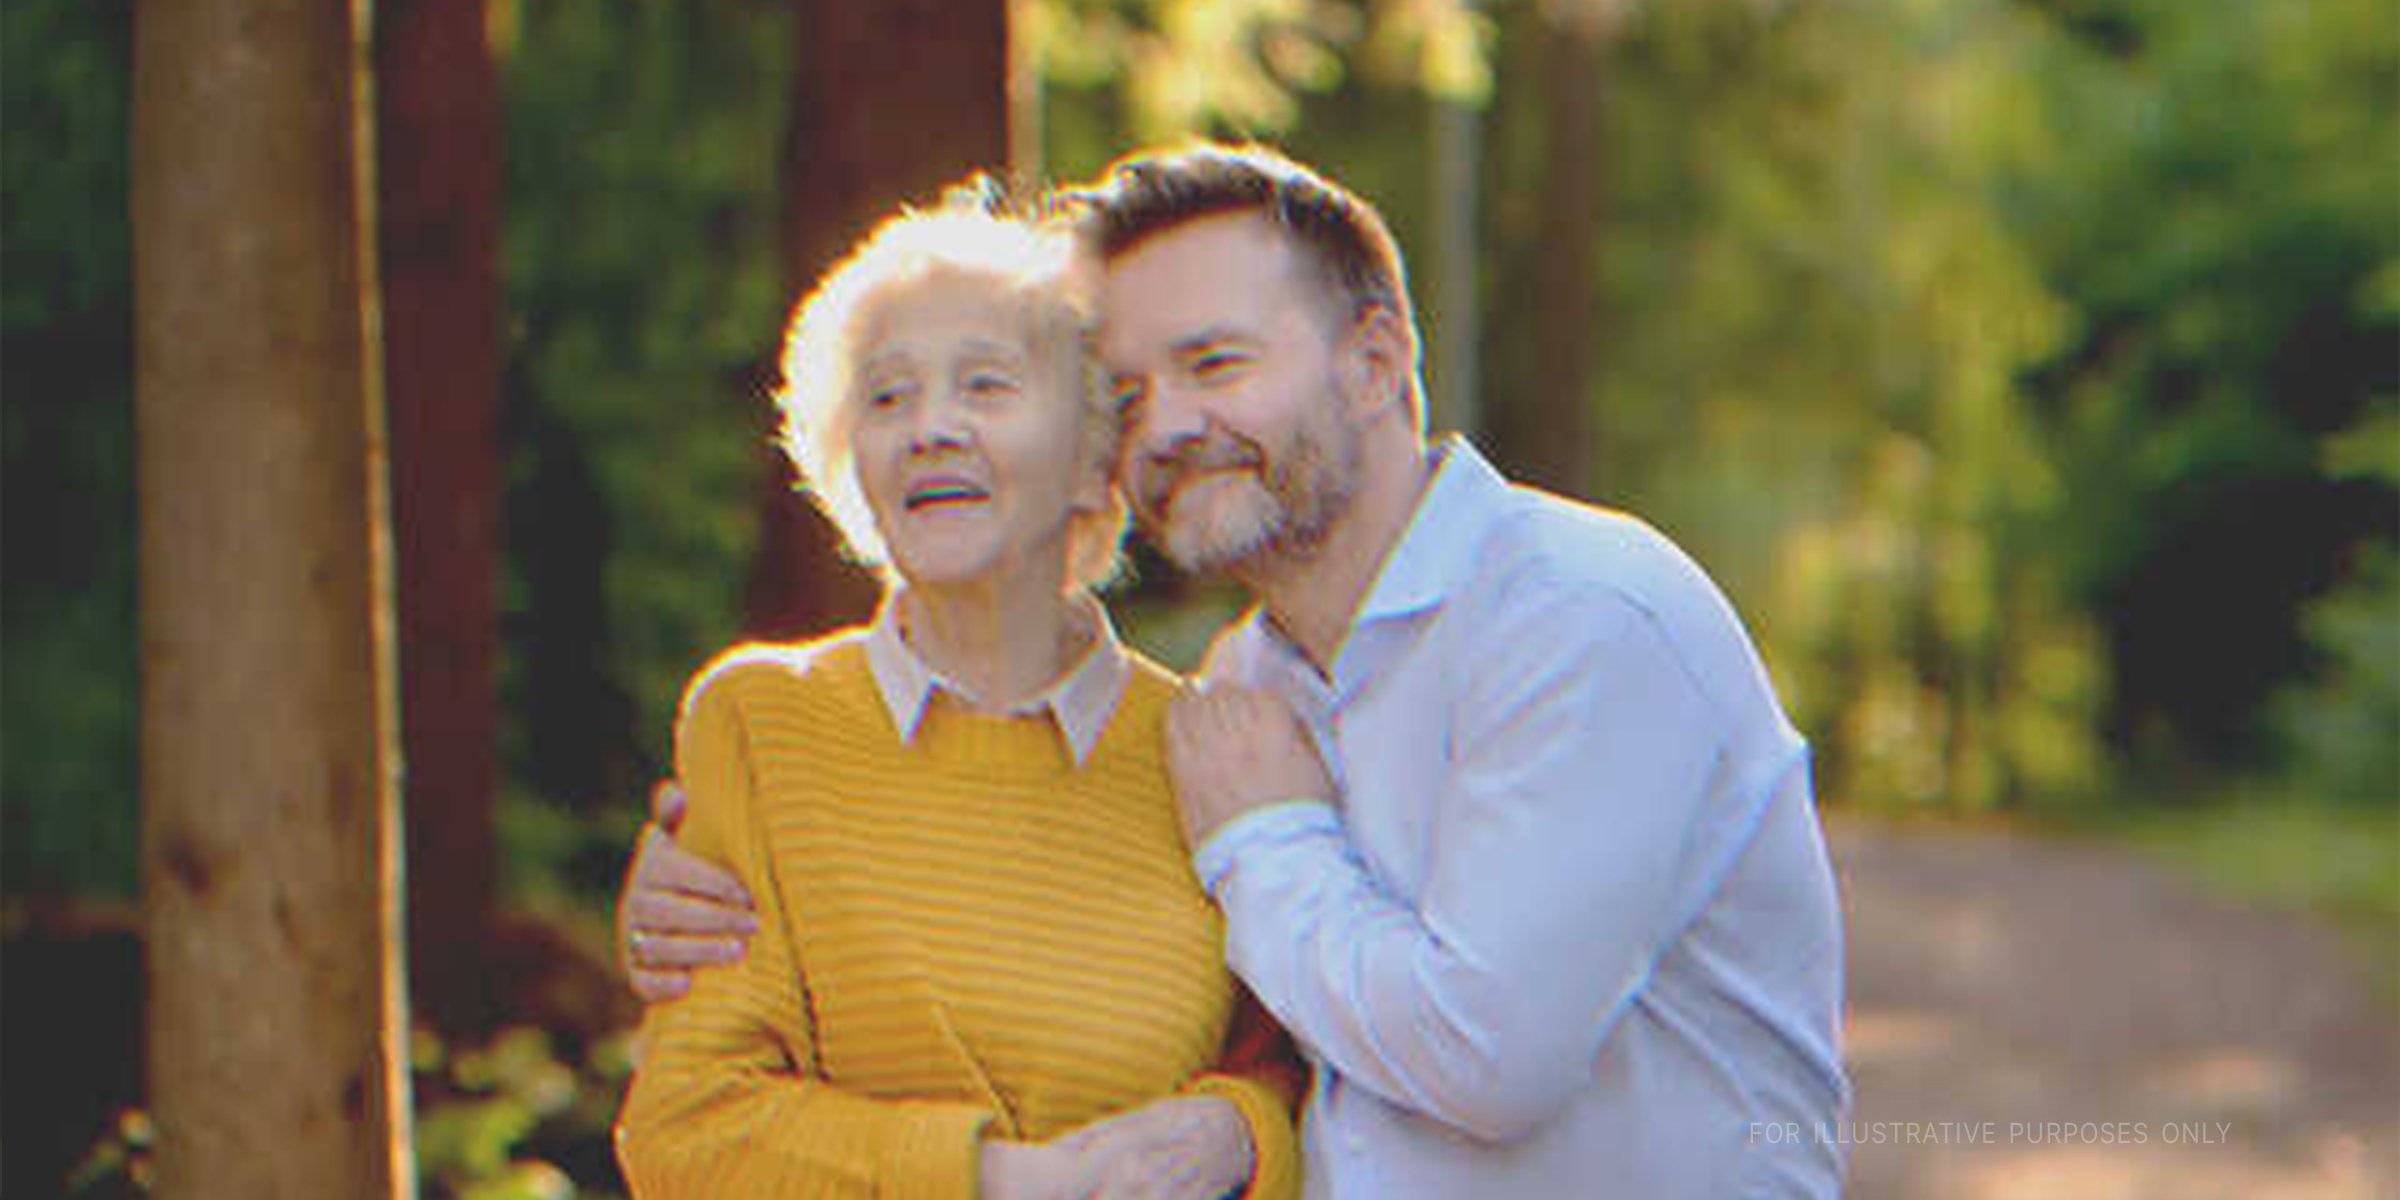 A young man hugging an elderly woman | Source: Shutterstock